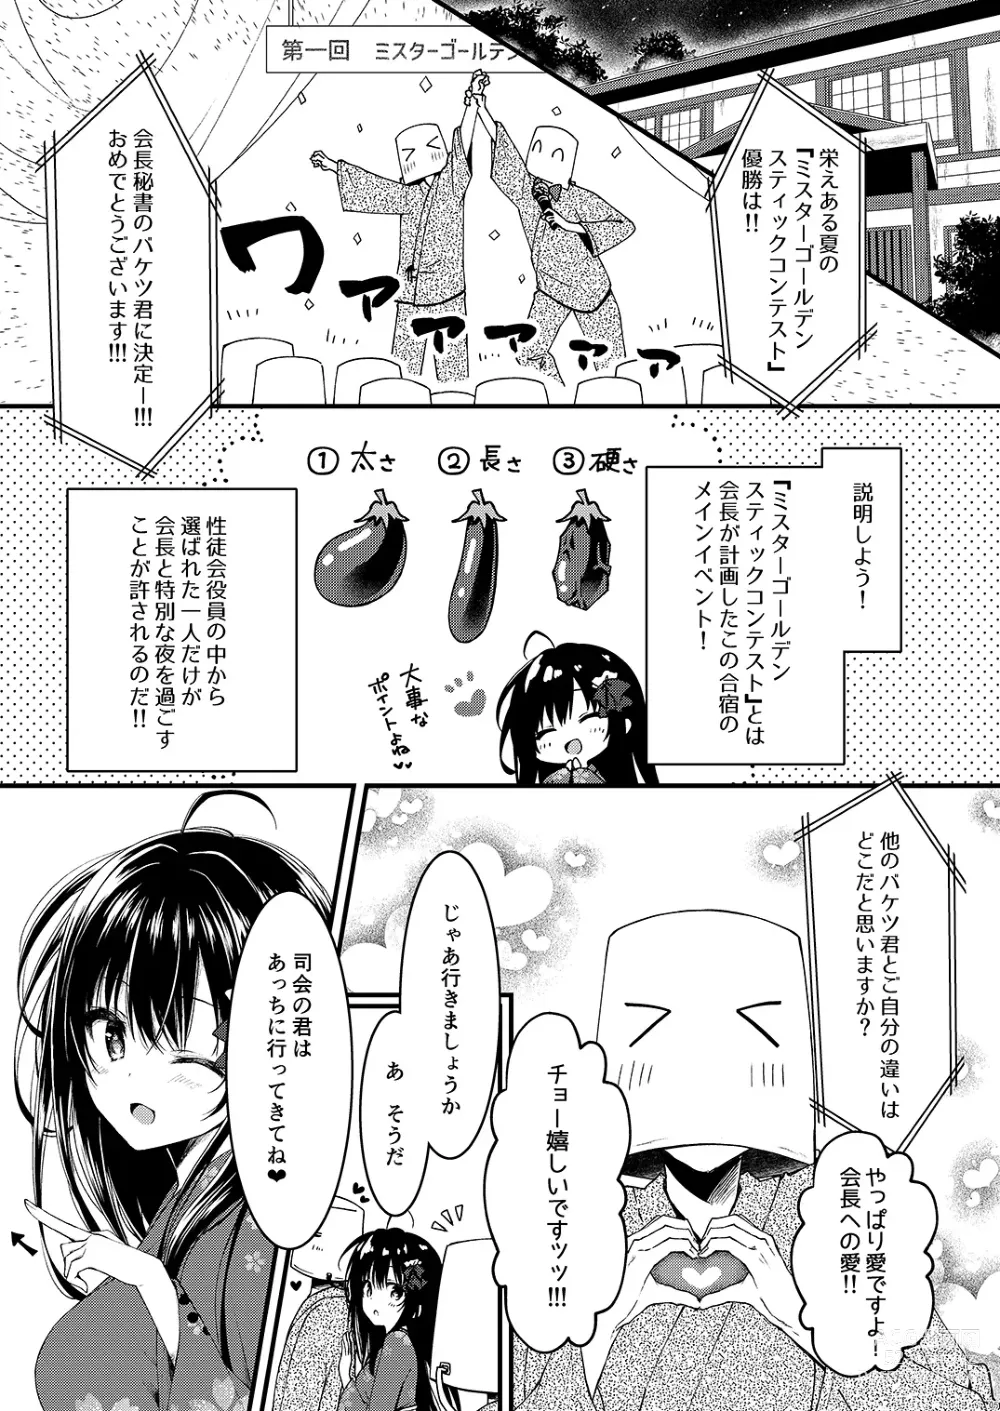 Page 5 of doujinshi Seikou Gakuen Seitokai in Natsugasshuku no Yoru